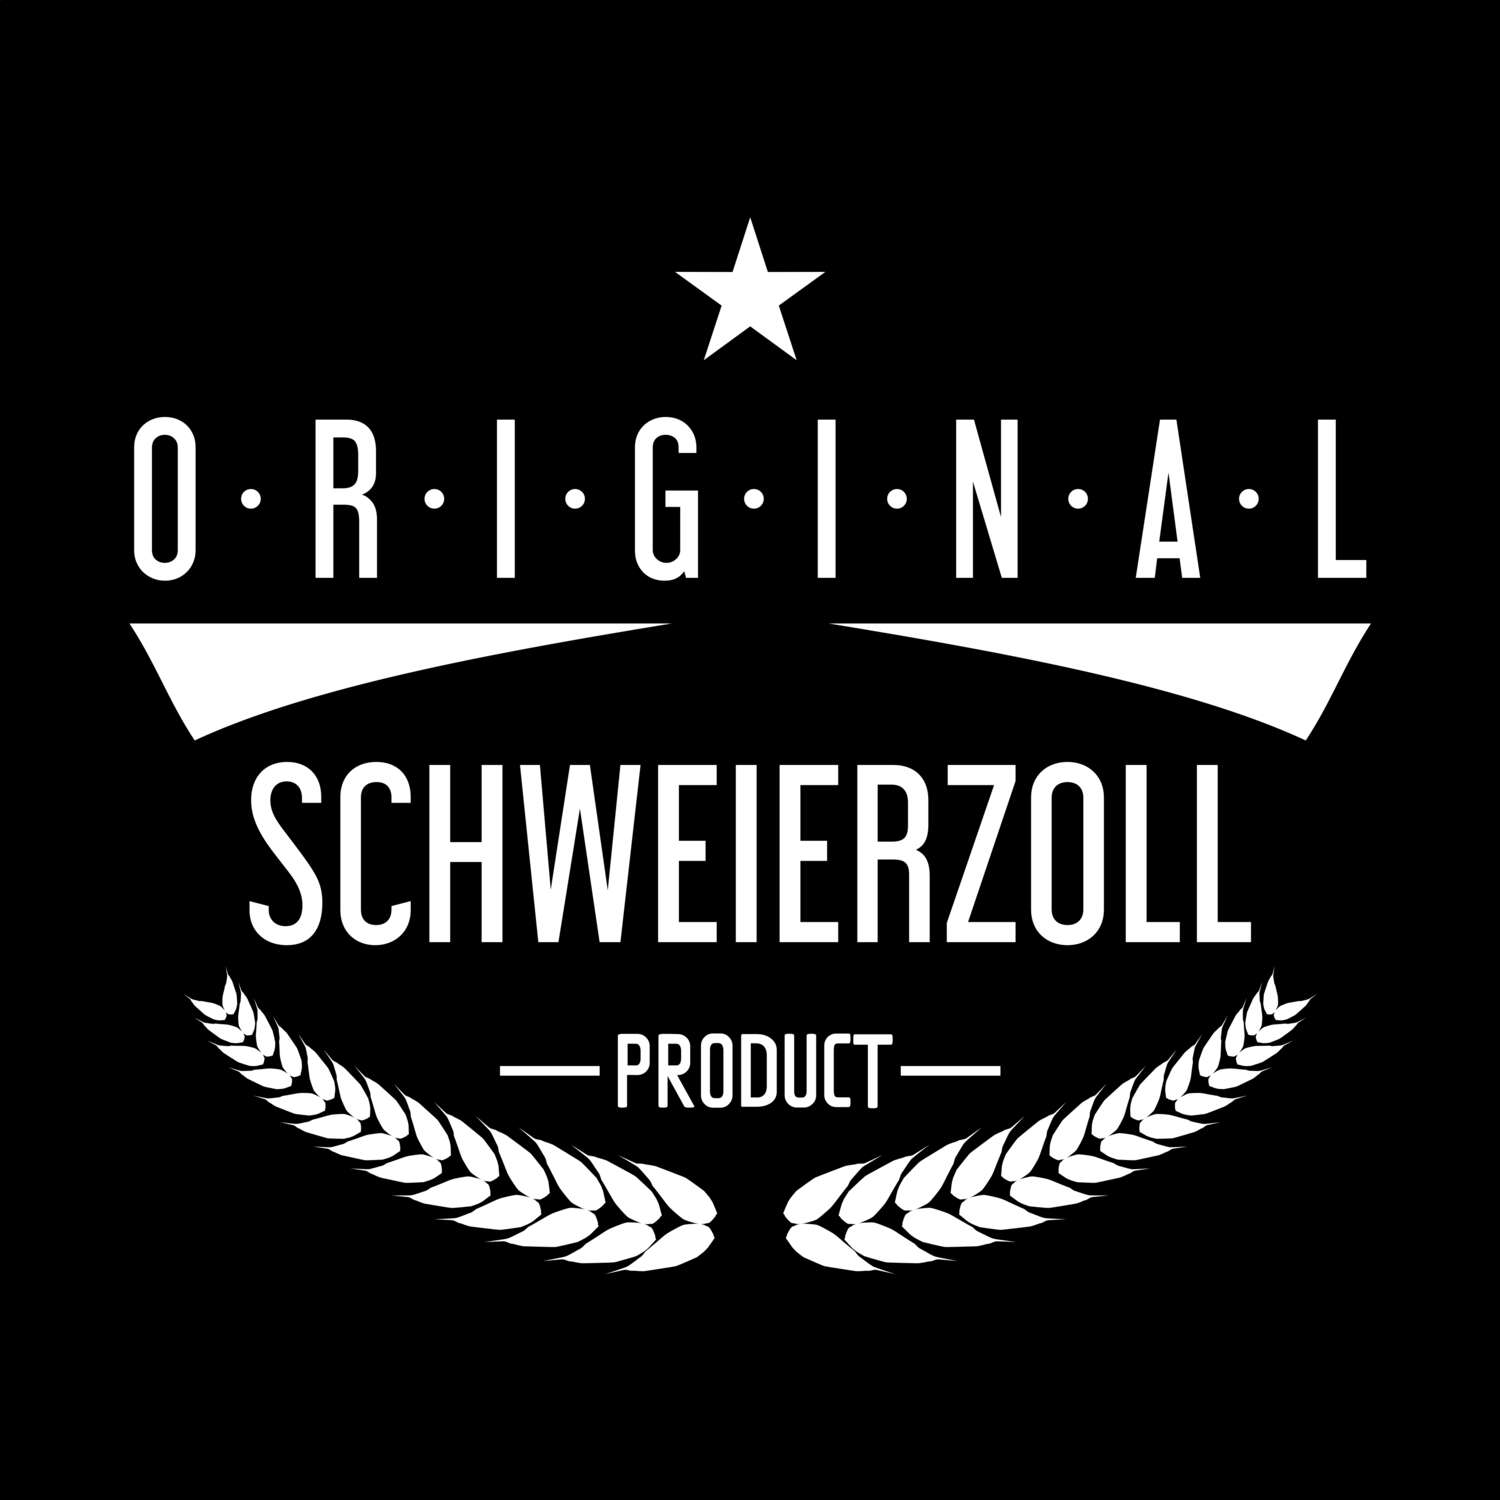 Schweierzoll T-Shirt »Original Product«